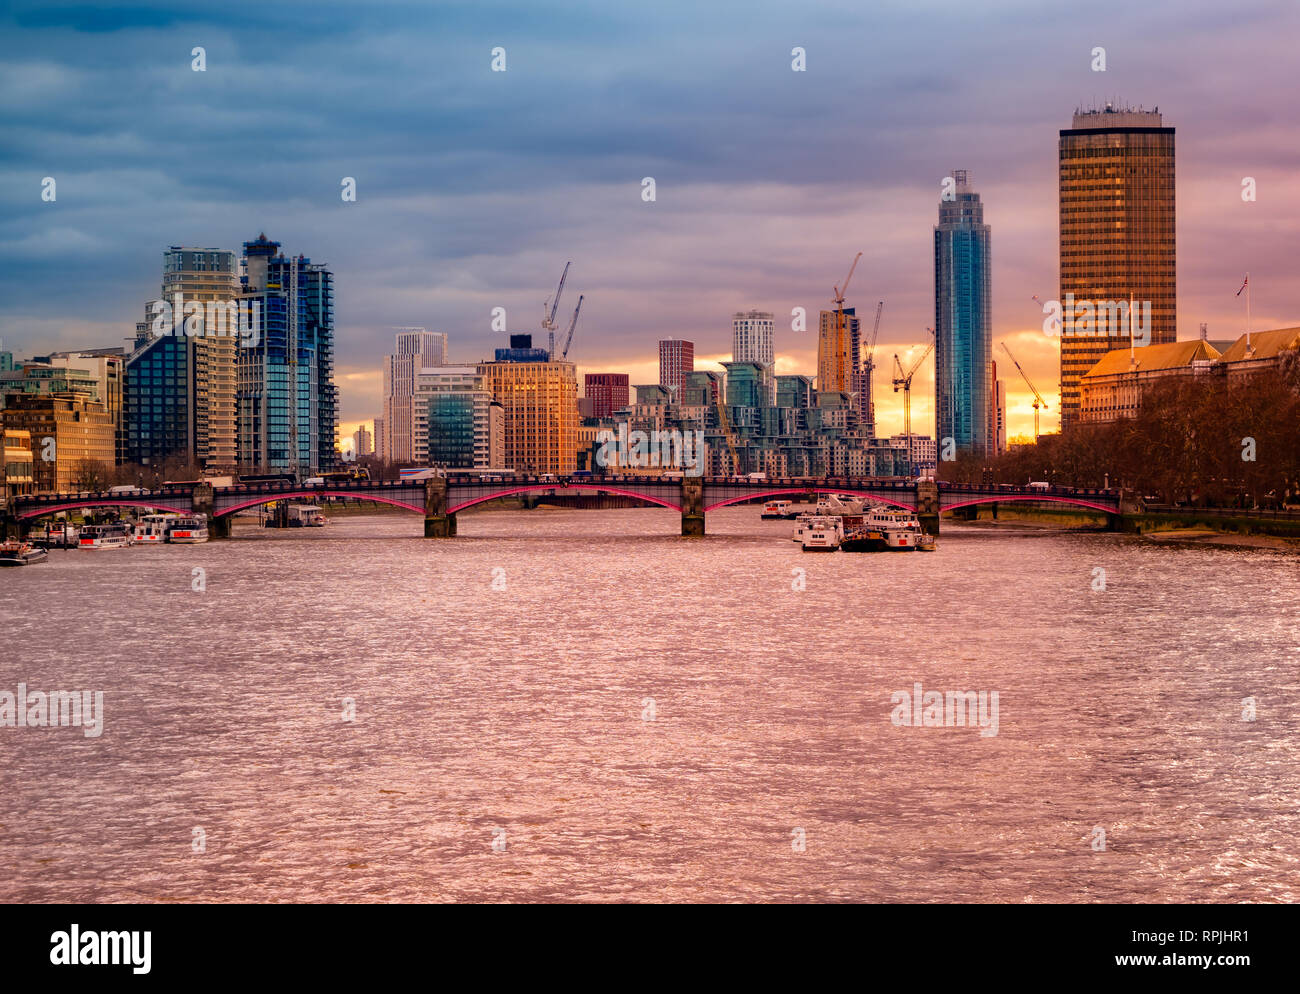 Hermosa vista panorámica de los famosos edificios de negocios y el río Támesis iluminado al atardecer, el paisaje urbano de Londres en el Reino Unido Foto de stock